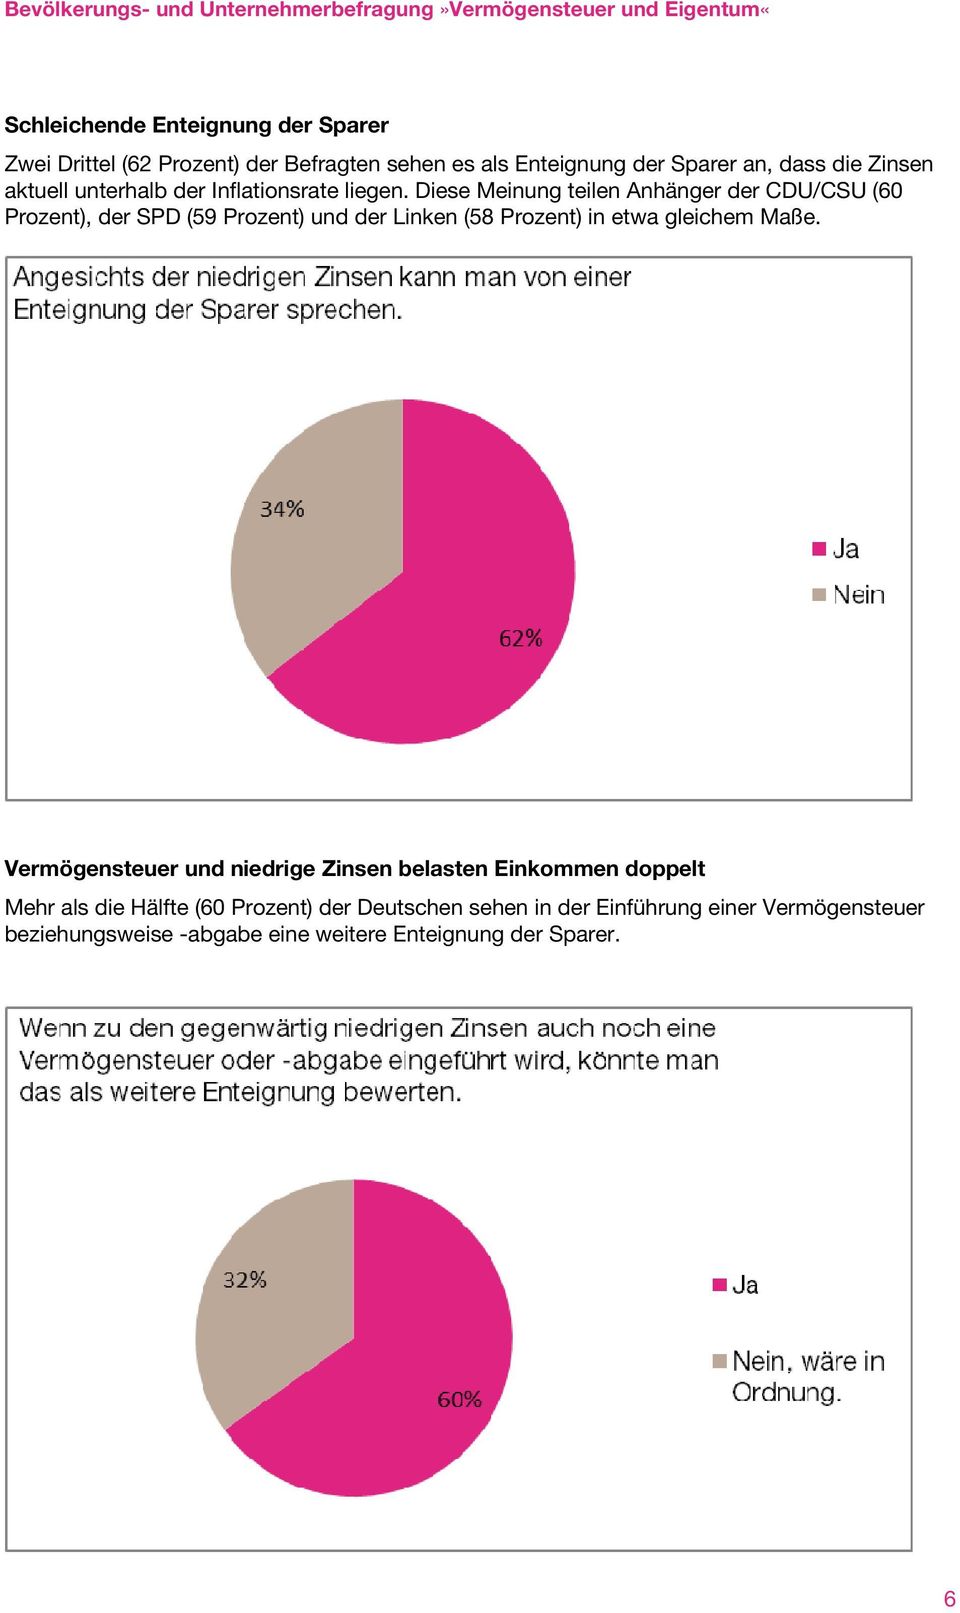 Diese Meinung teilen Anhänger der CDU/CSU (60 Prozent), der SPD (59 Prozent) und der Linken (58 Prozent) in etwa gleichem Maße.